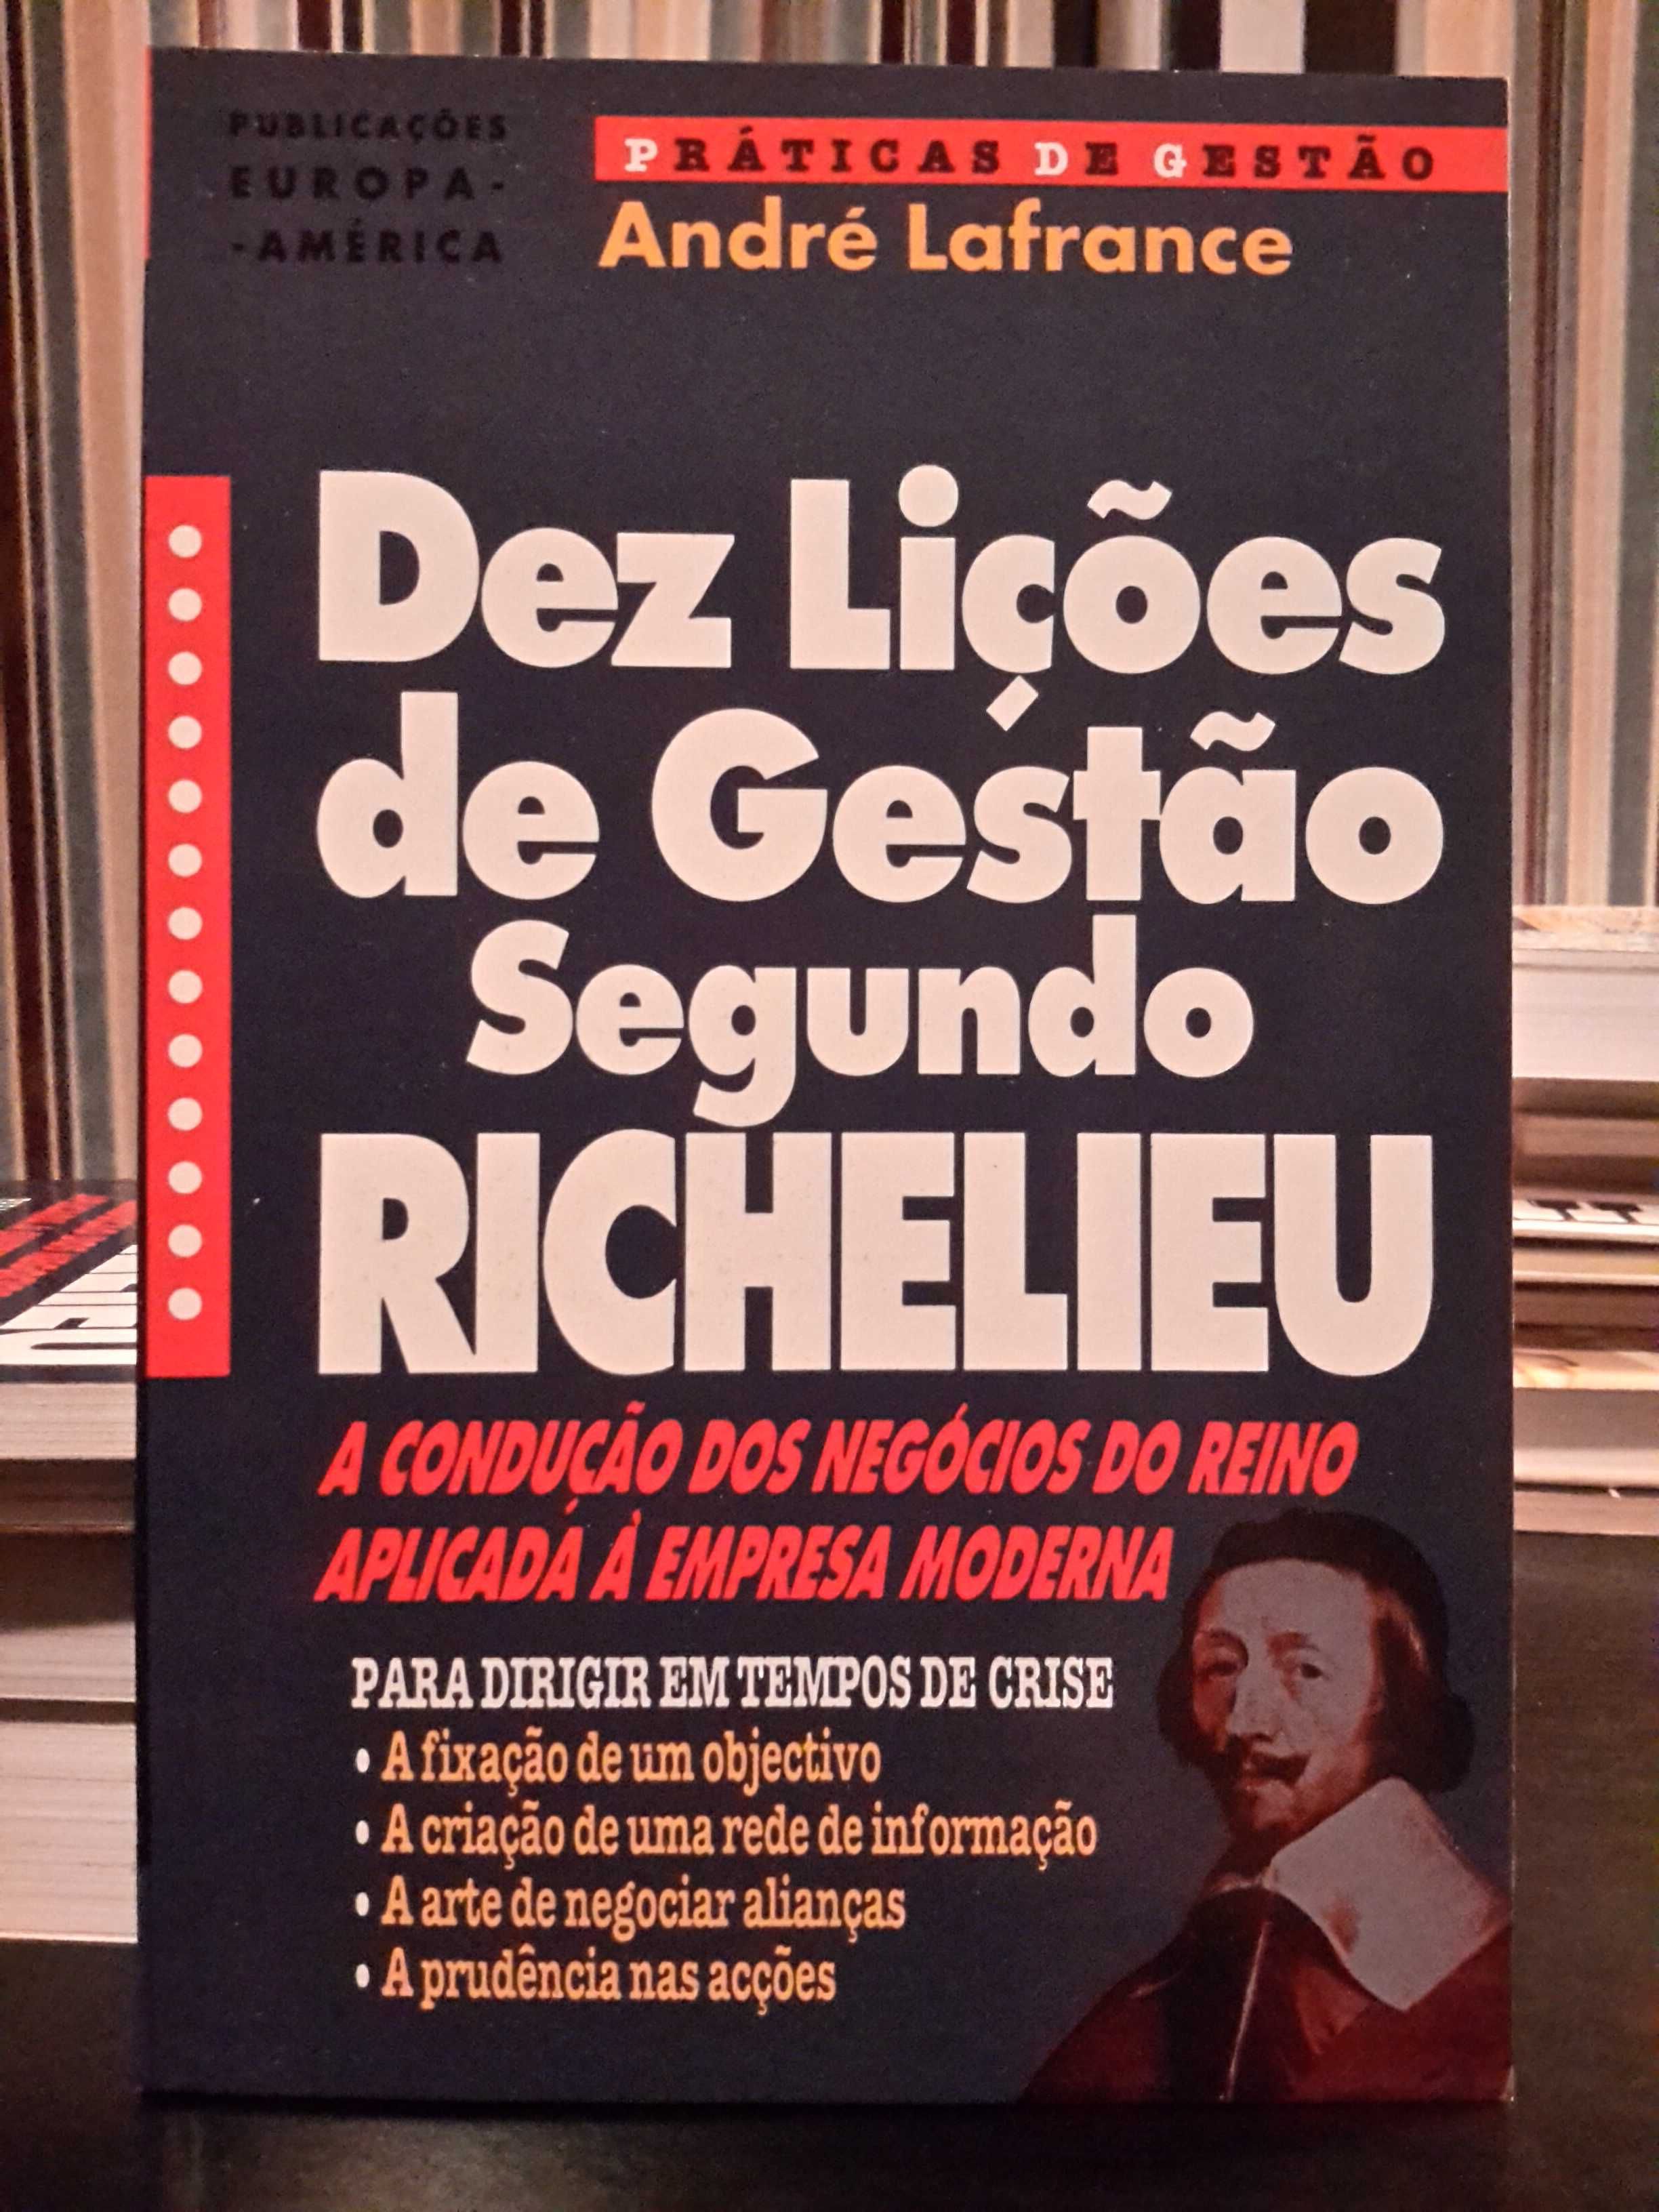 André Lafrance - Dez Lições de Gestão segundo Richelieu